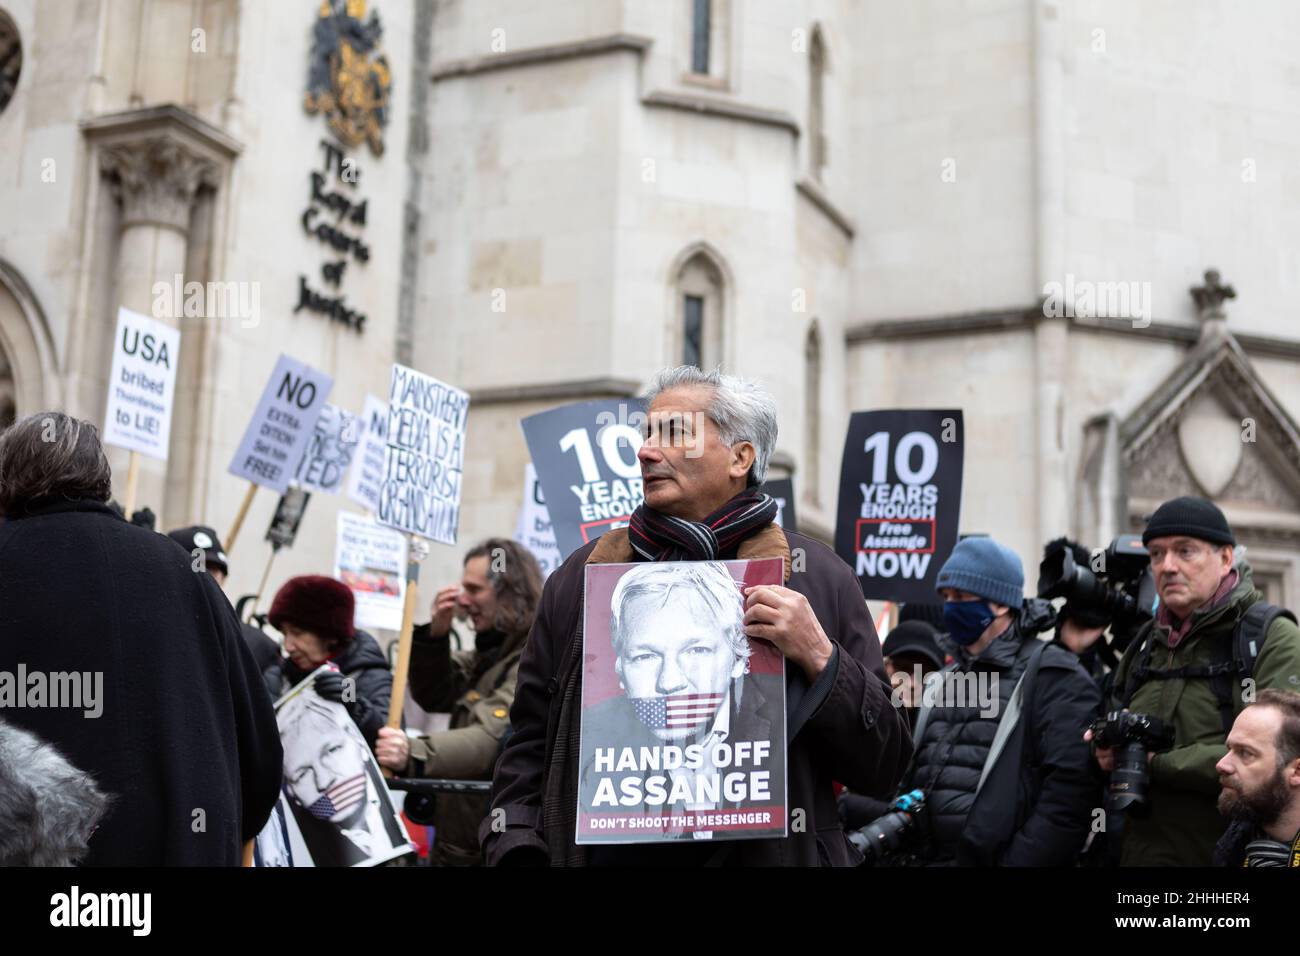 Ein Protestler sah, wie er ein Plakat mit der Aufschrift „Hände weg von Assange“ hielt. Schieß nicht auf den Boten'.der britische Oberste Gerichtshof hat Julian Assange die Erlaubnis erteilt, seine Berufung beim Obersten Gerichtshof des Vereinigten Königreichs einzulegen, weil der Fall wichtige rechtliche Aspekte aufwarf, die für die breite Öffentlichkeit von rechtlicher Bedeutung sind. Stella Moris, die Verlobte von Julian Assange, erschien vor den königlichen Gerichtshöfen, um eine Erklärung abzugeben, in der die jüngste Entscheidung bekanntgegeben wurde. Im Dezember 2021 entschied der Oberste Gerichtshof, dass Assange an die USA ausgeliefert werden kann, wo er verschiedene Verbrechen gemäß dem Spionagegesetz angeklagt wurde. (Foto von Belinda Jiao Stockfoto